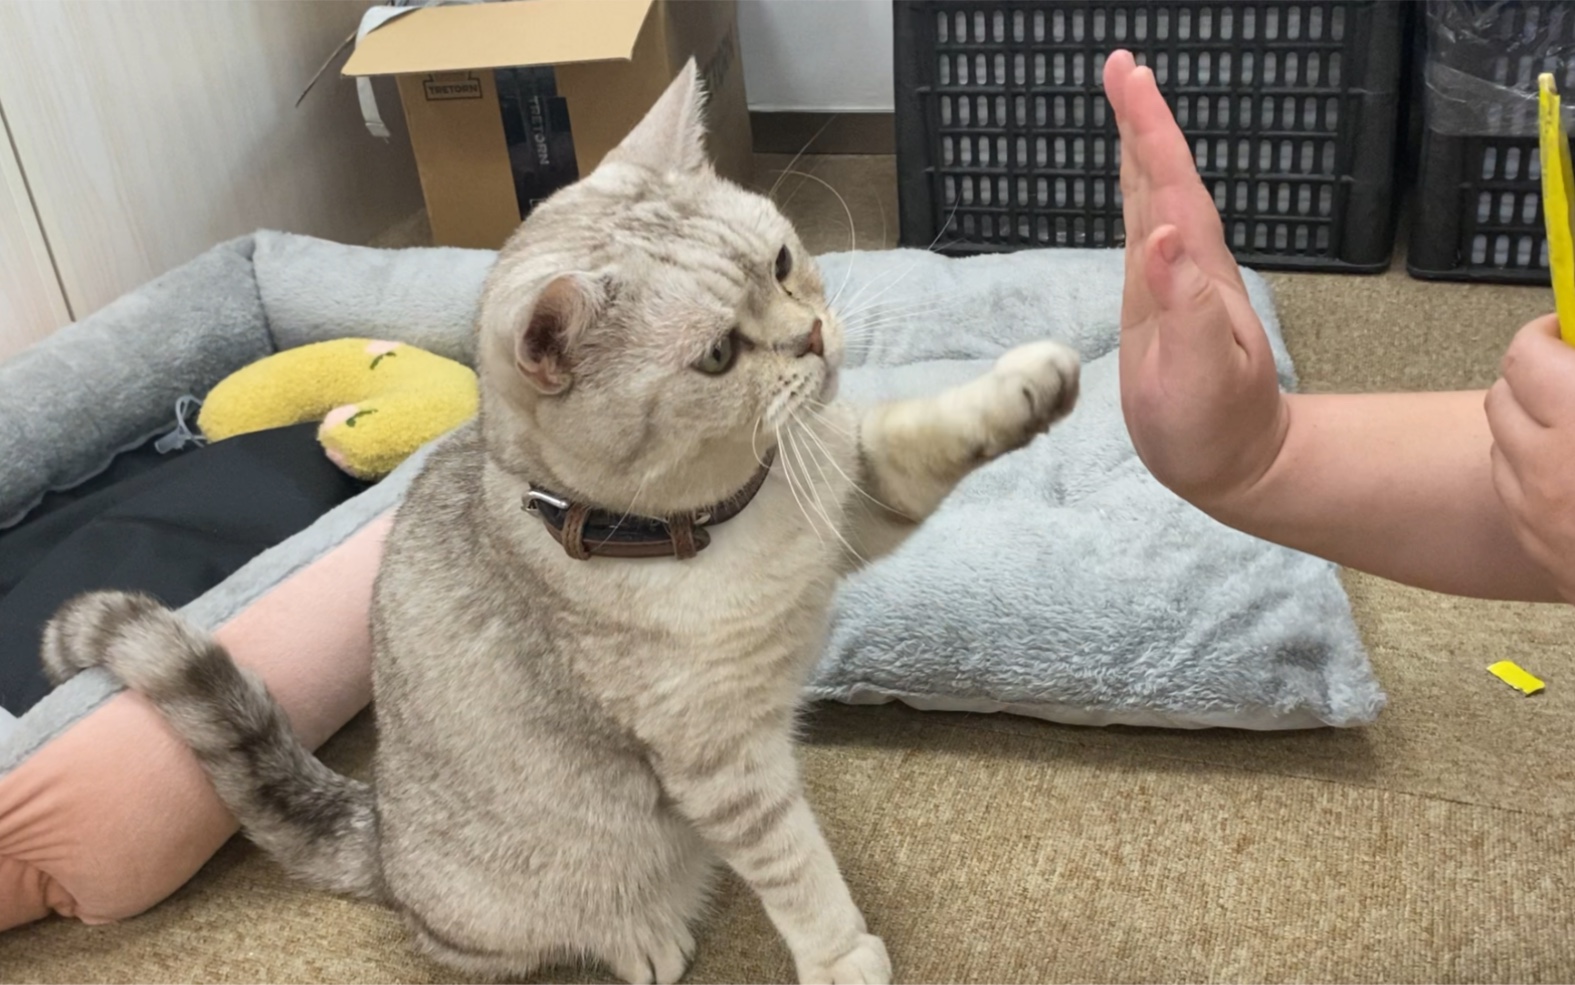 对猫友好的手势图片